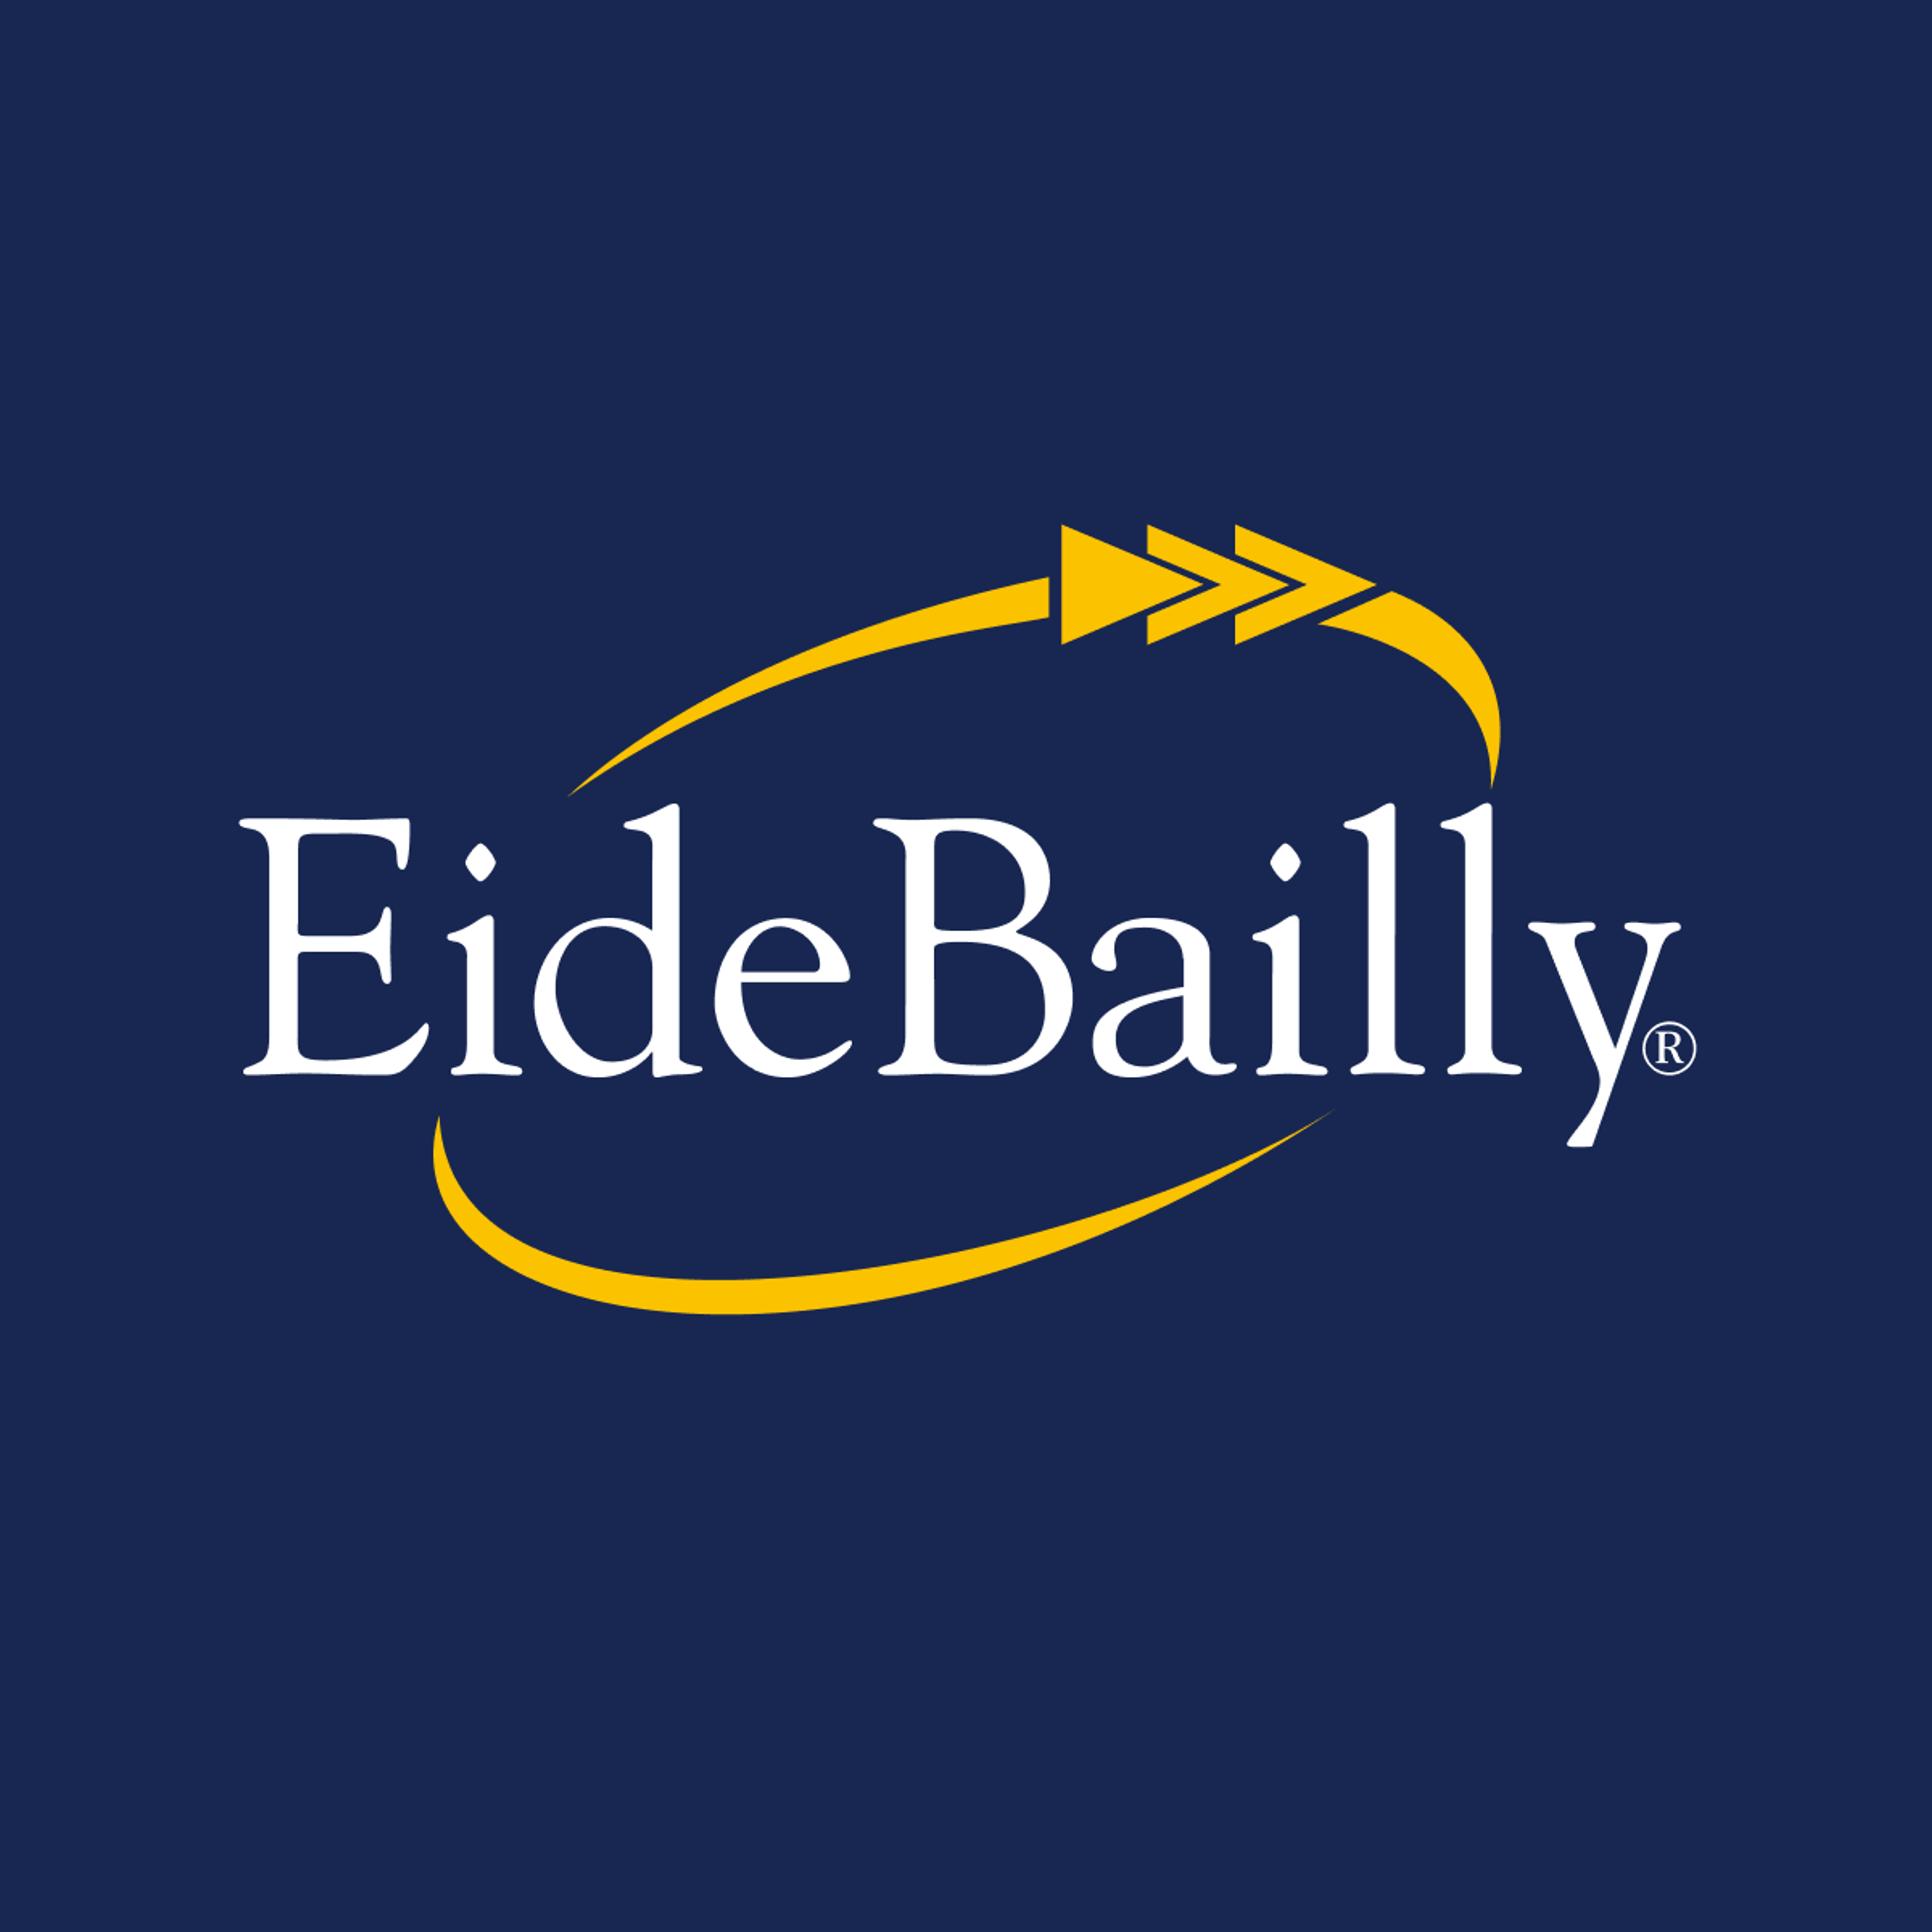 Eide Bailly LLP logo